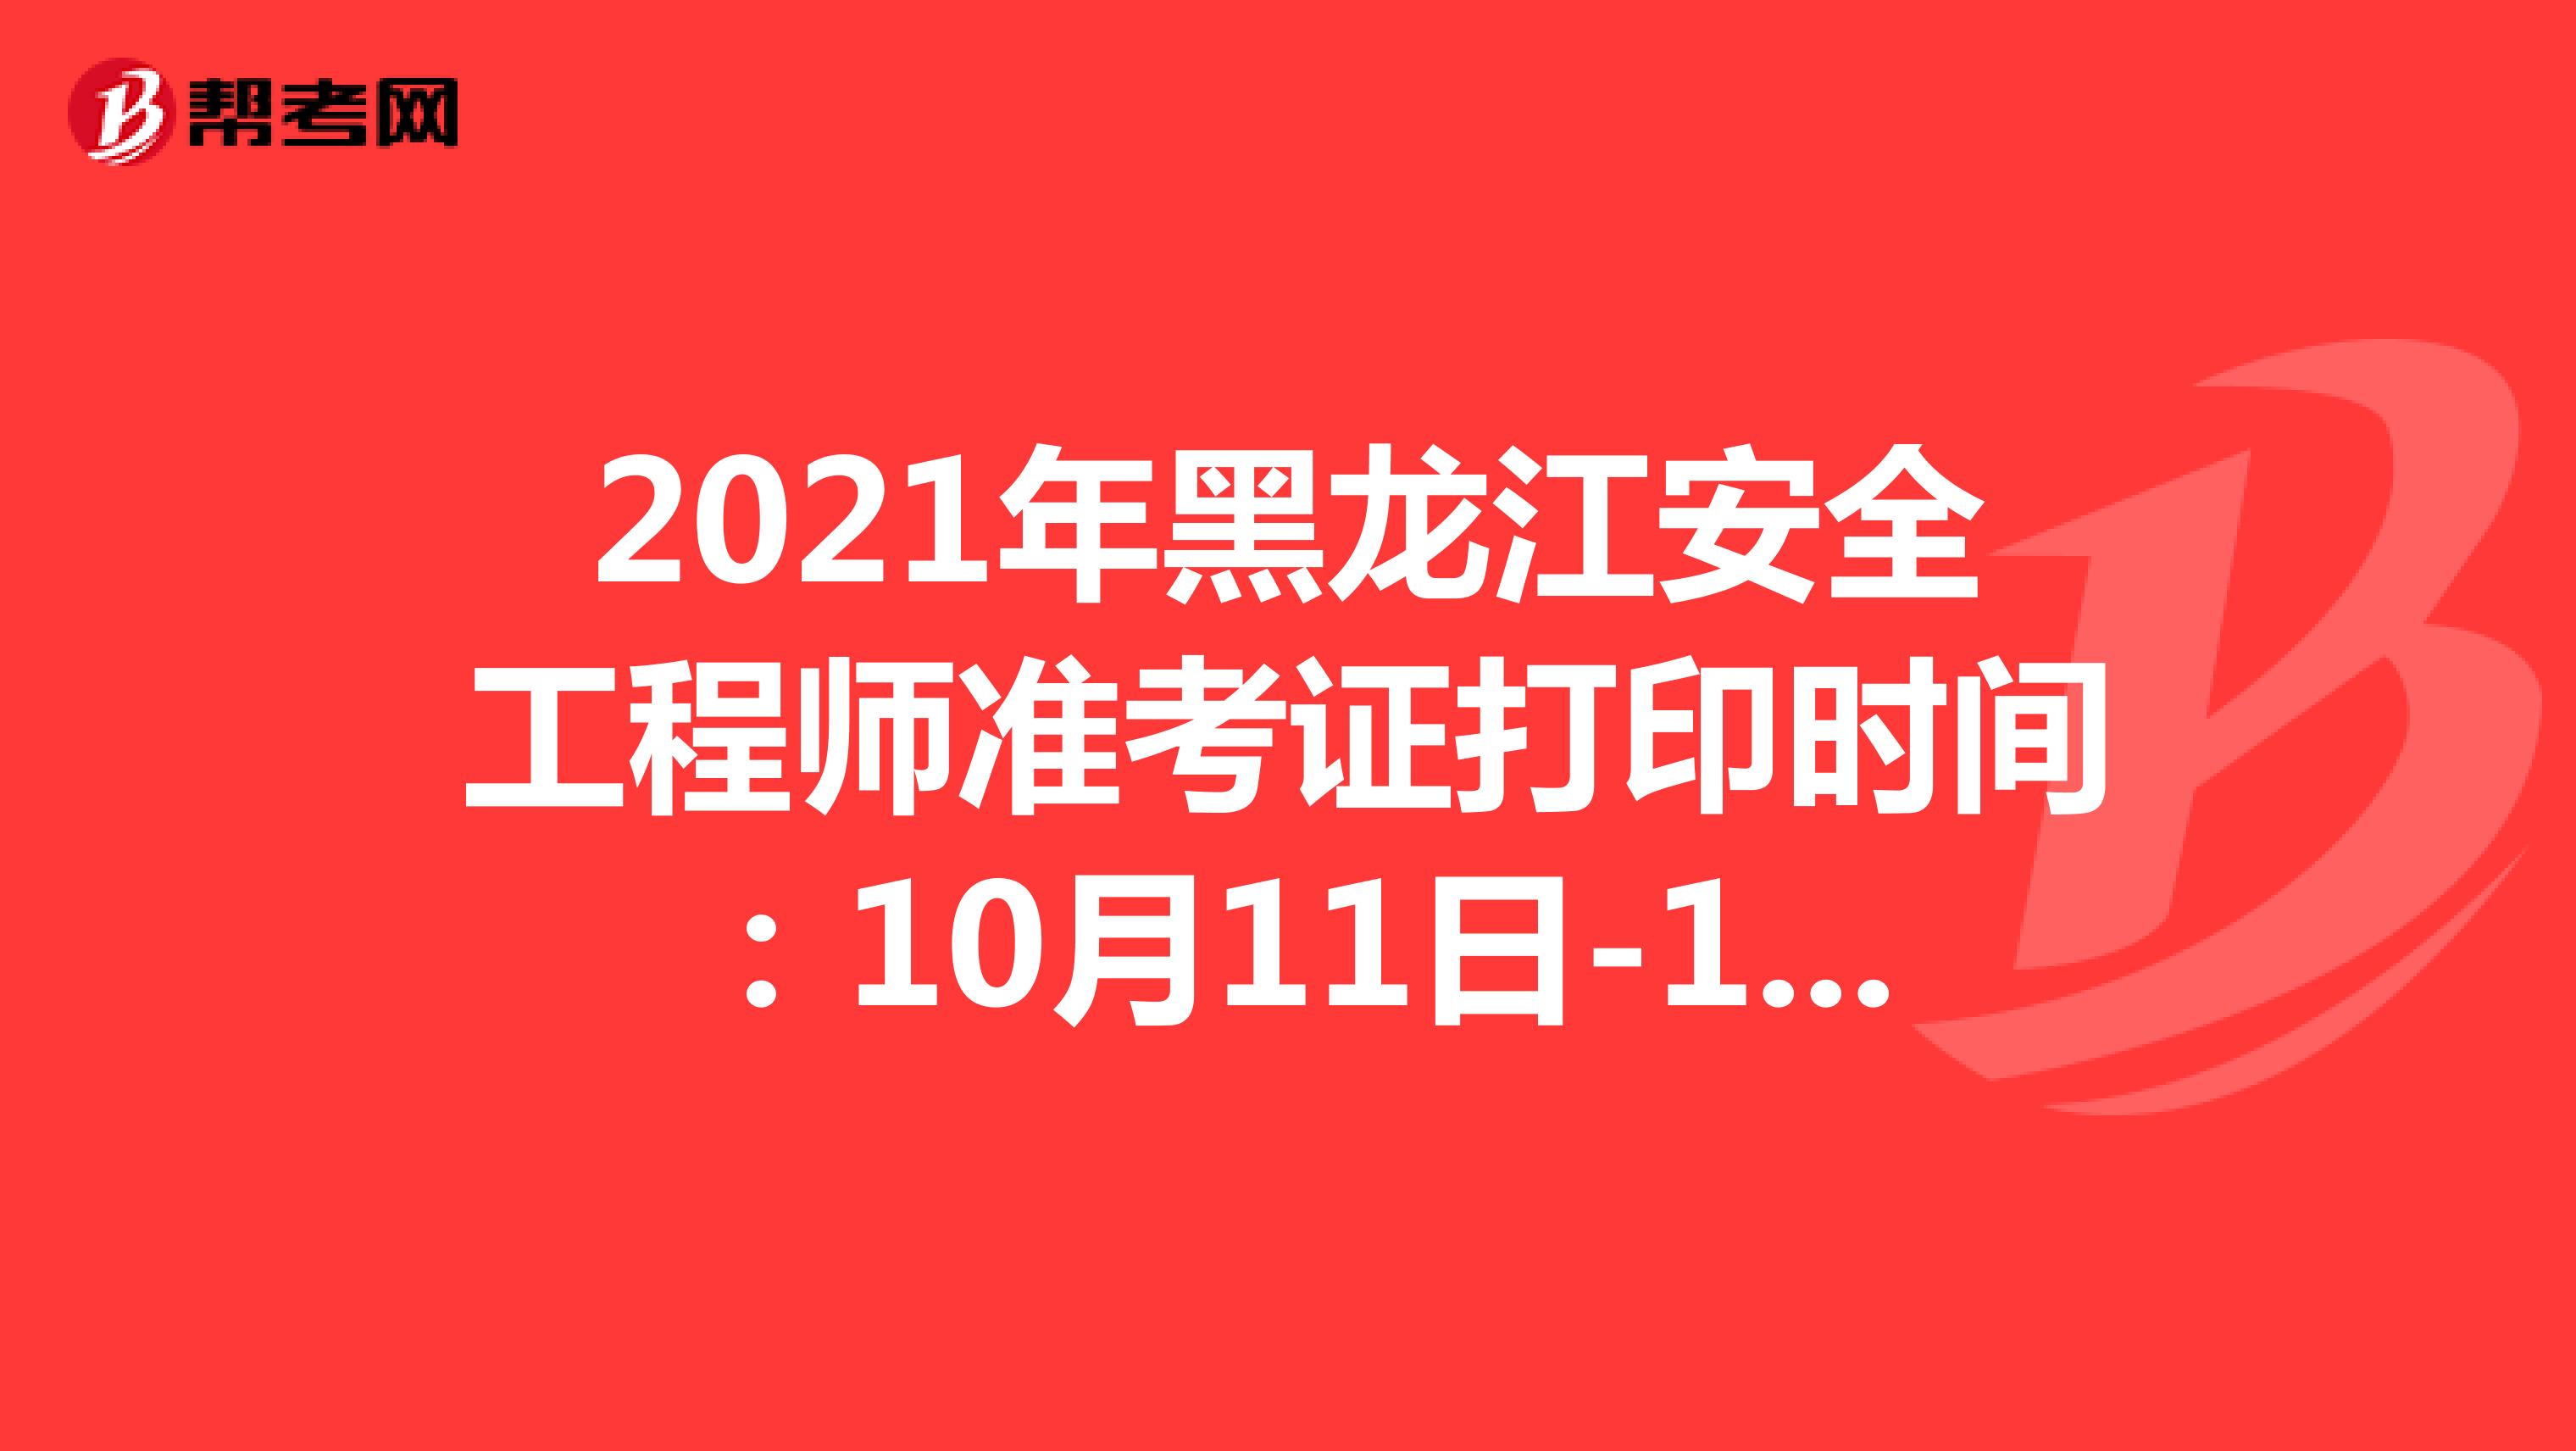 2021年黑龙江安全工程师准考证打印时间：10月11日-14日